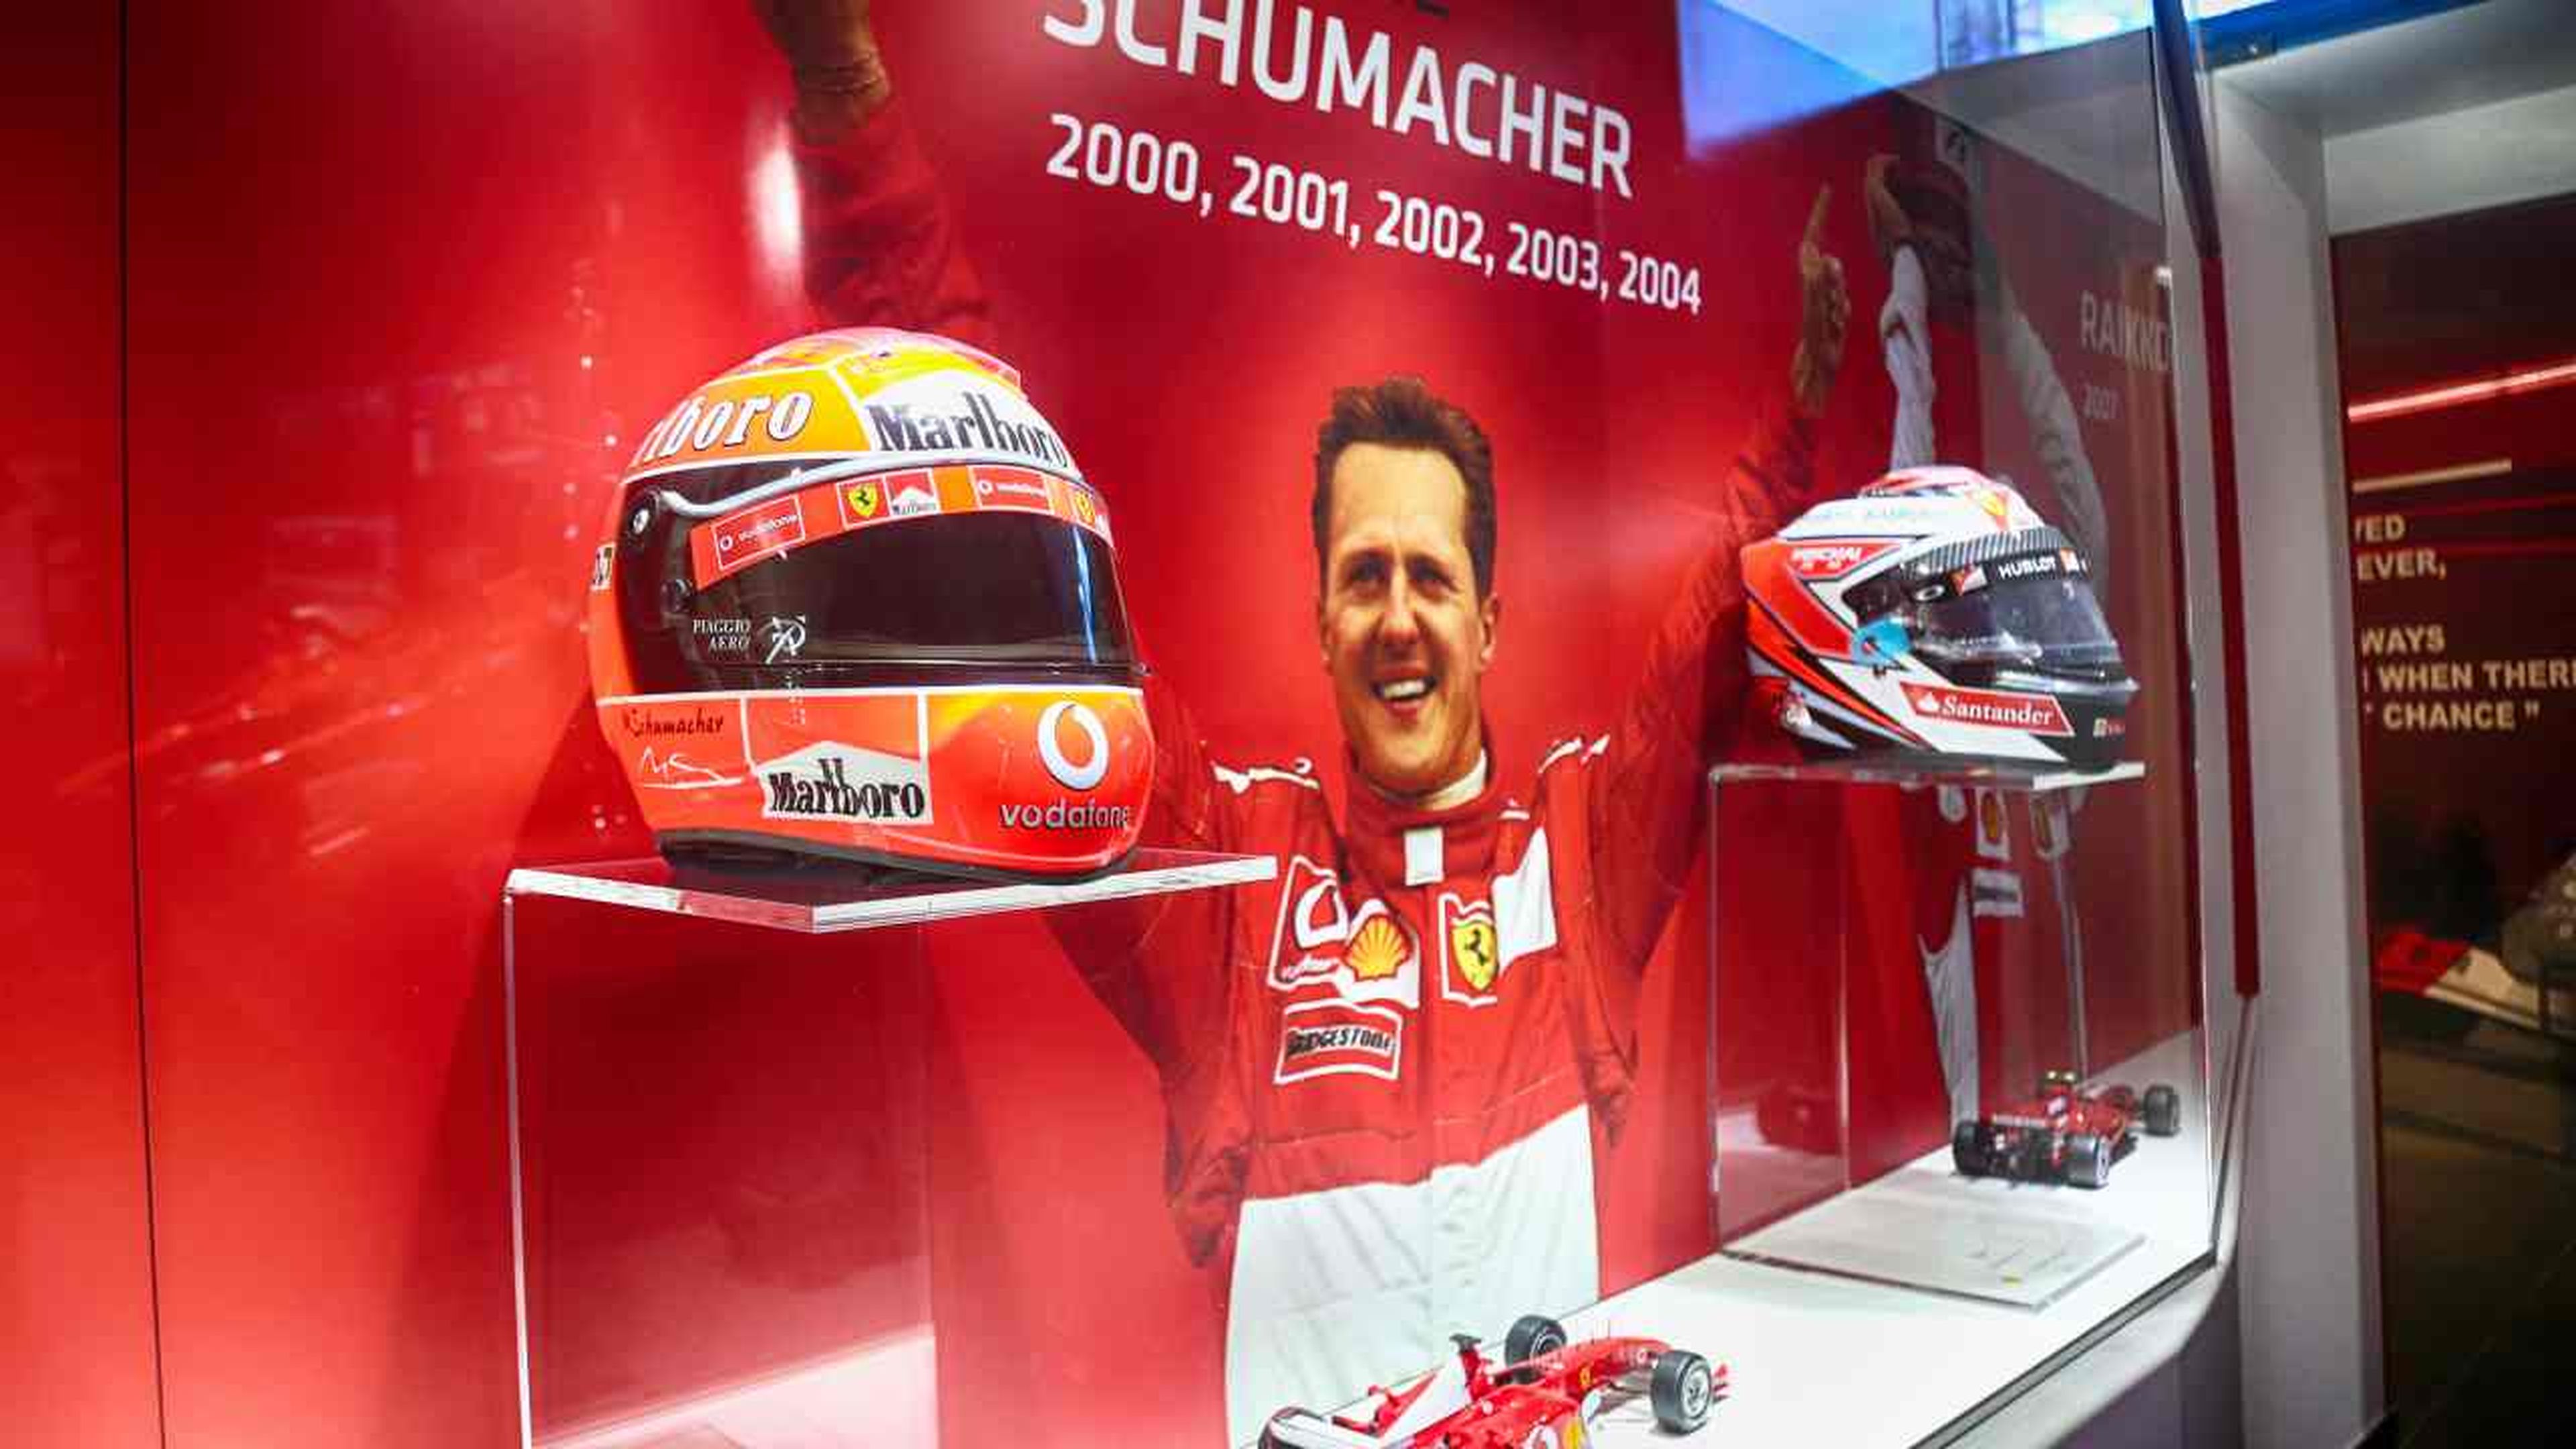 Exposición "Michael 50" Michael Schumacher